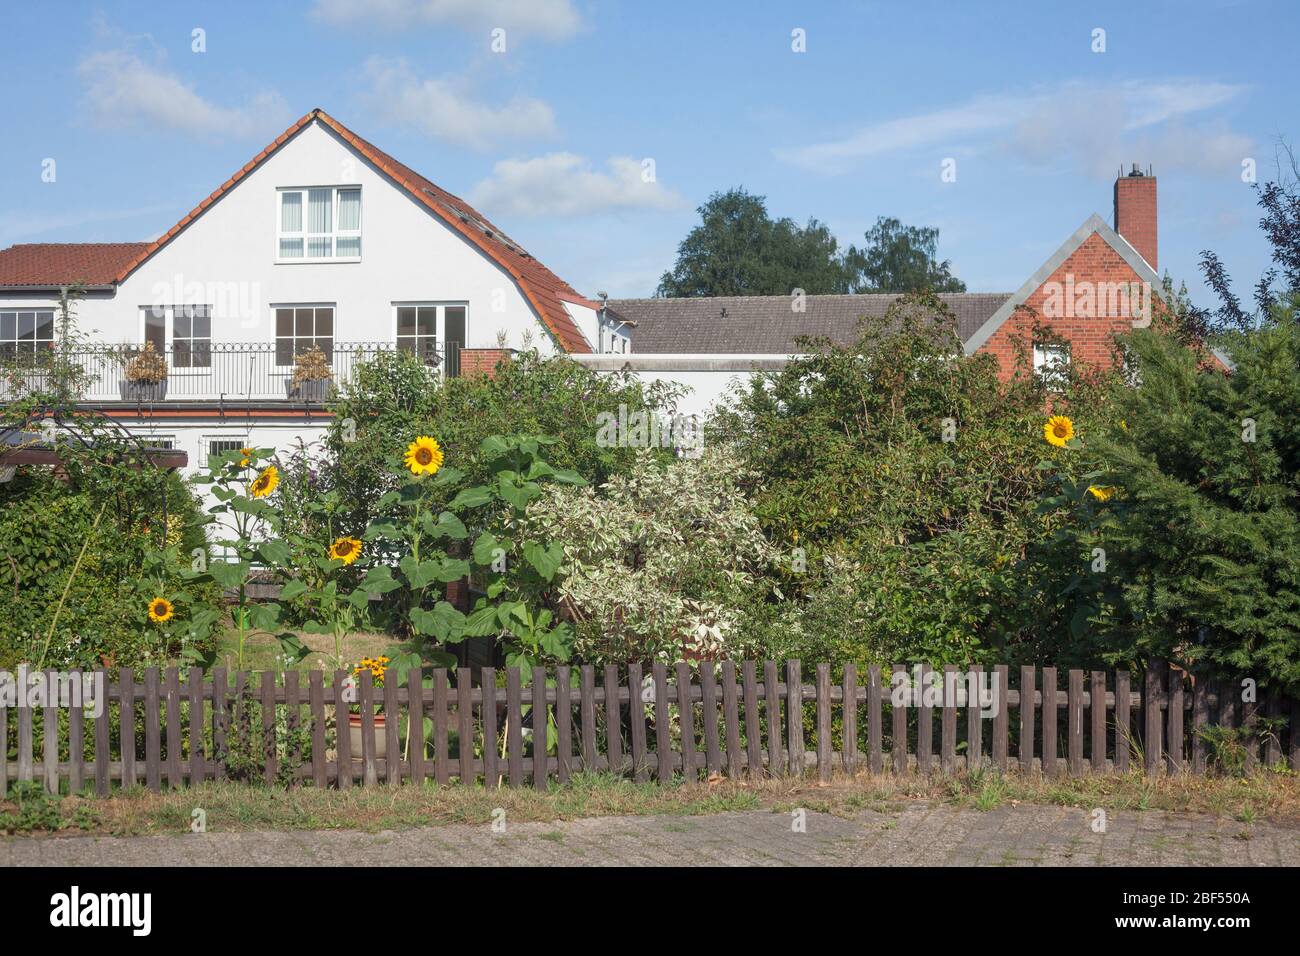 Wohnhäuser mit Gartenzaun am Fluss Wörpe, Lilienthal, Niedersachsen, Deutschland, Europa Stock Photo